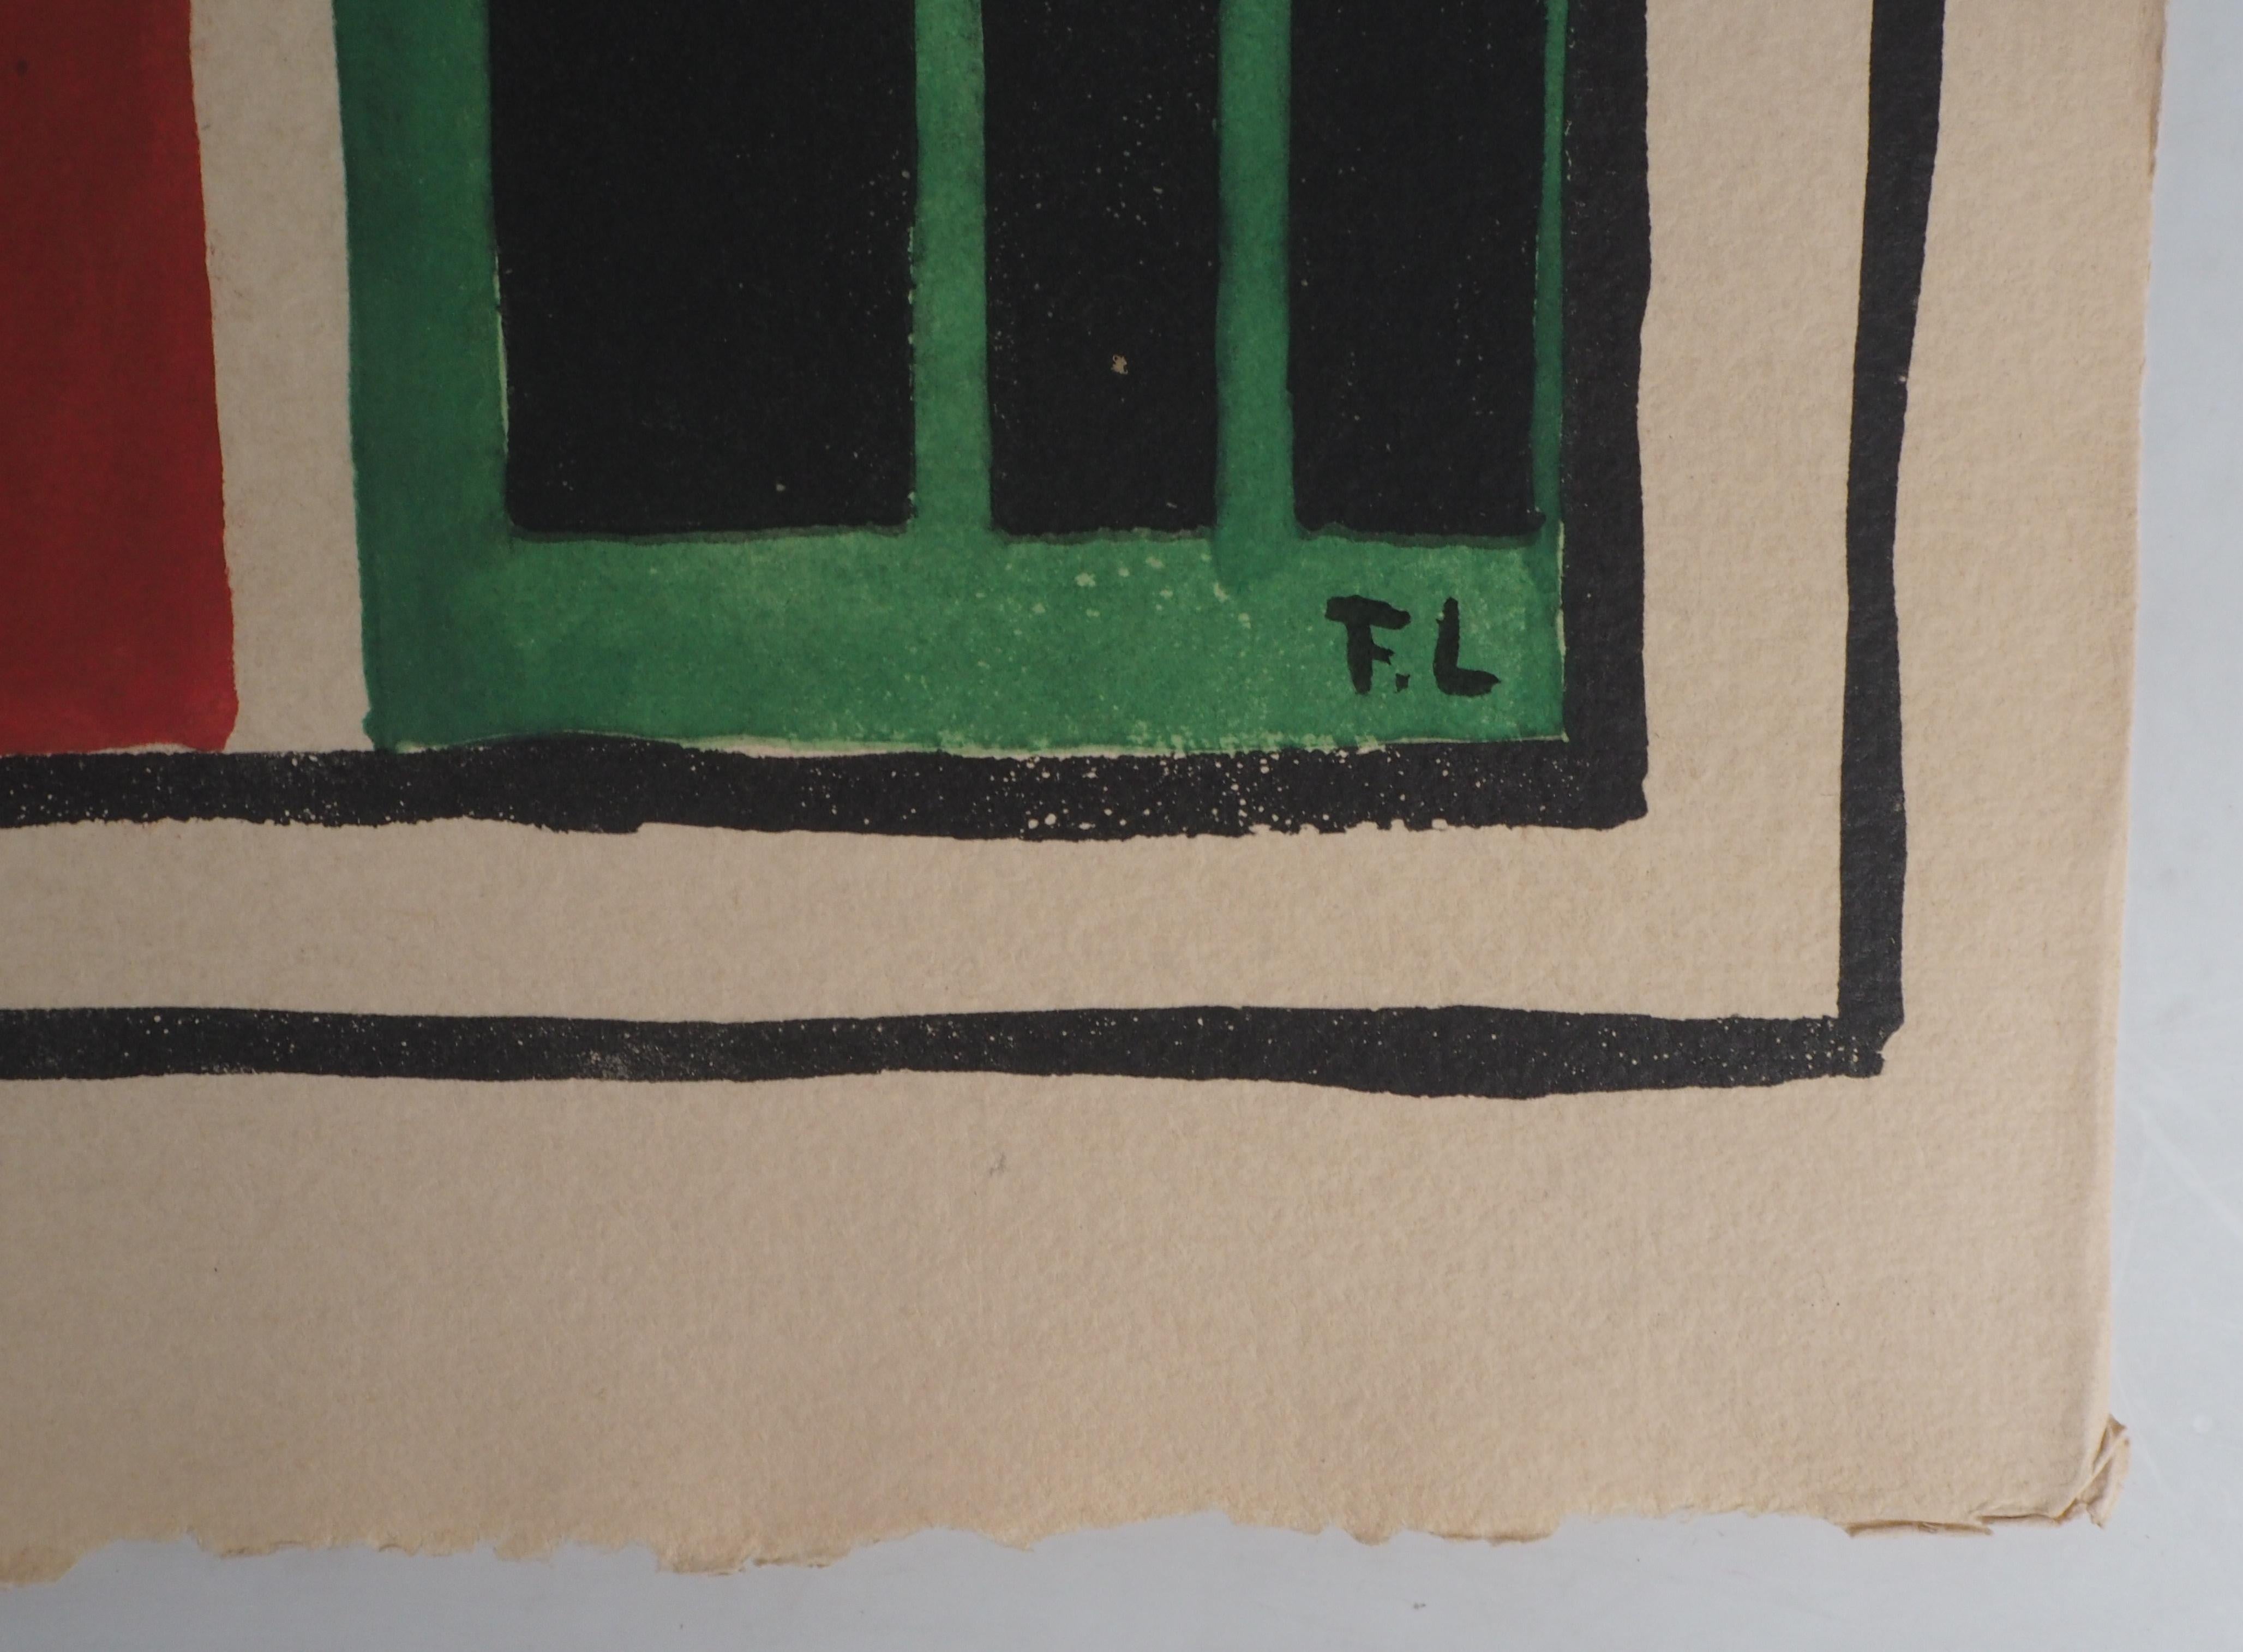 Fernand LÉGER 
In der Bildhauerwerkstatt, 1959

Original-Lithographie und Schablone 
Gedruckte Unterschrift auf der Platte
Auf Pergament Auvergne 38,9 x 50 cm (ca. 15,3 x 19,6 Inches)
Veröffentlicht im Jahr 1959, unter der Kontrolle der Frau von 